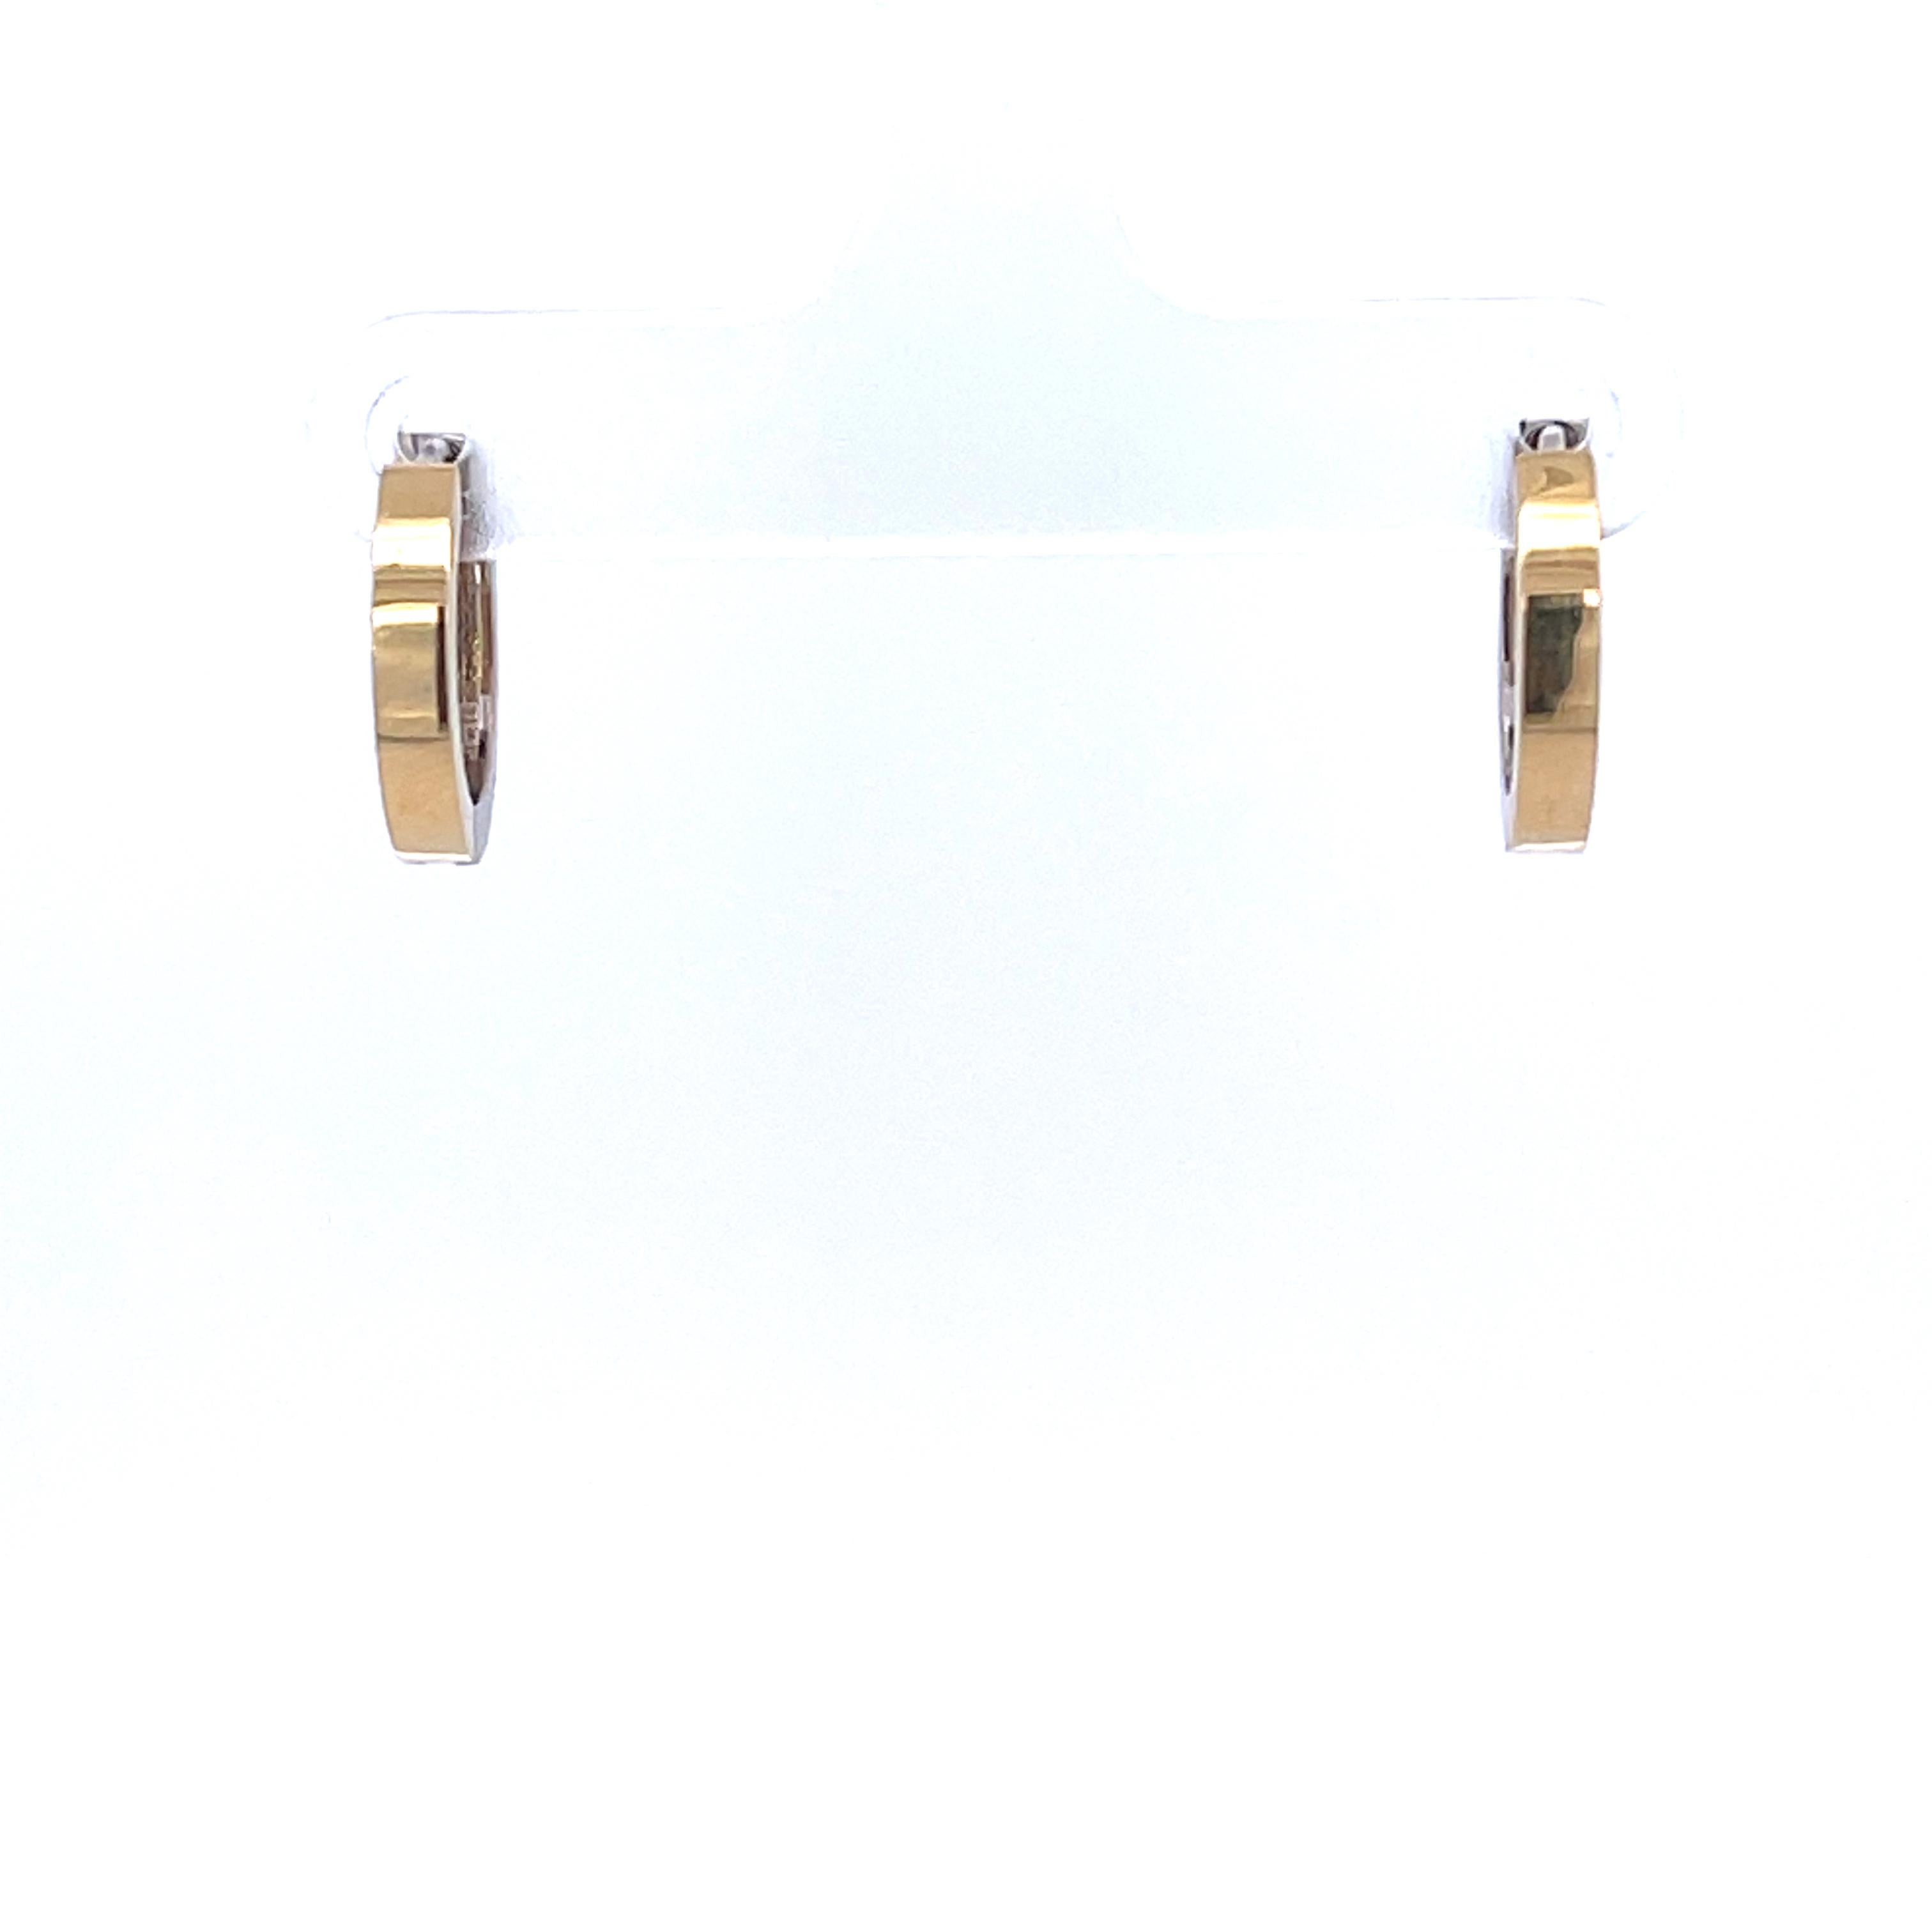 Ein Paar Ohrringe aus 18-karätigem Gelb- und Weißgold mit abnehmbaren Ohrringhüllen aus 18-karätigem Gelbgold mit zwei geschnitzten Jaditelementen. Diese Ohrringe und Ohrringhüllen wurden von llyn strong entworfen und hergestellt.